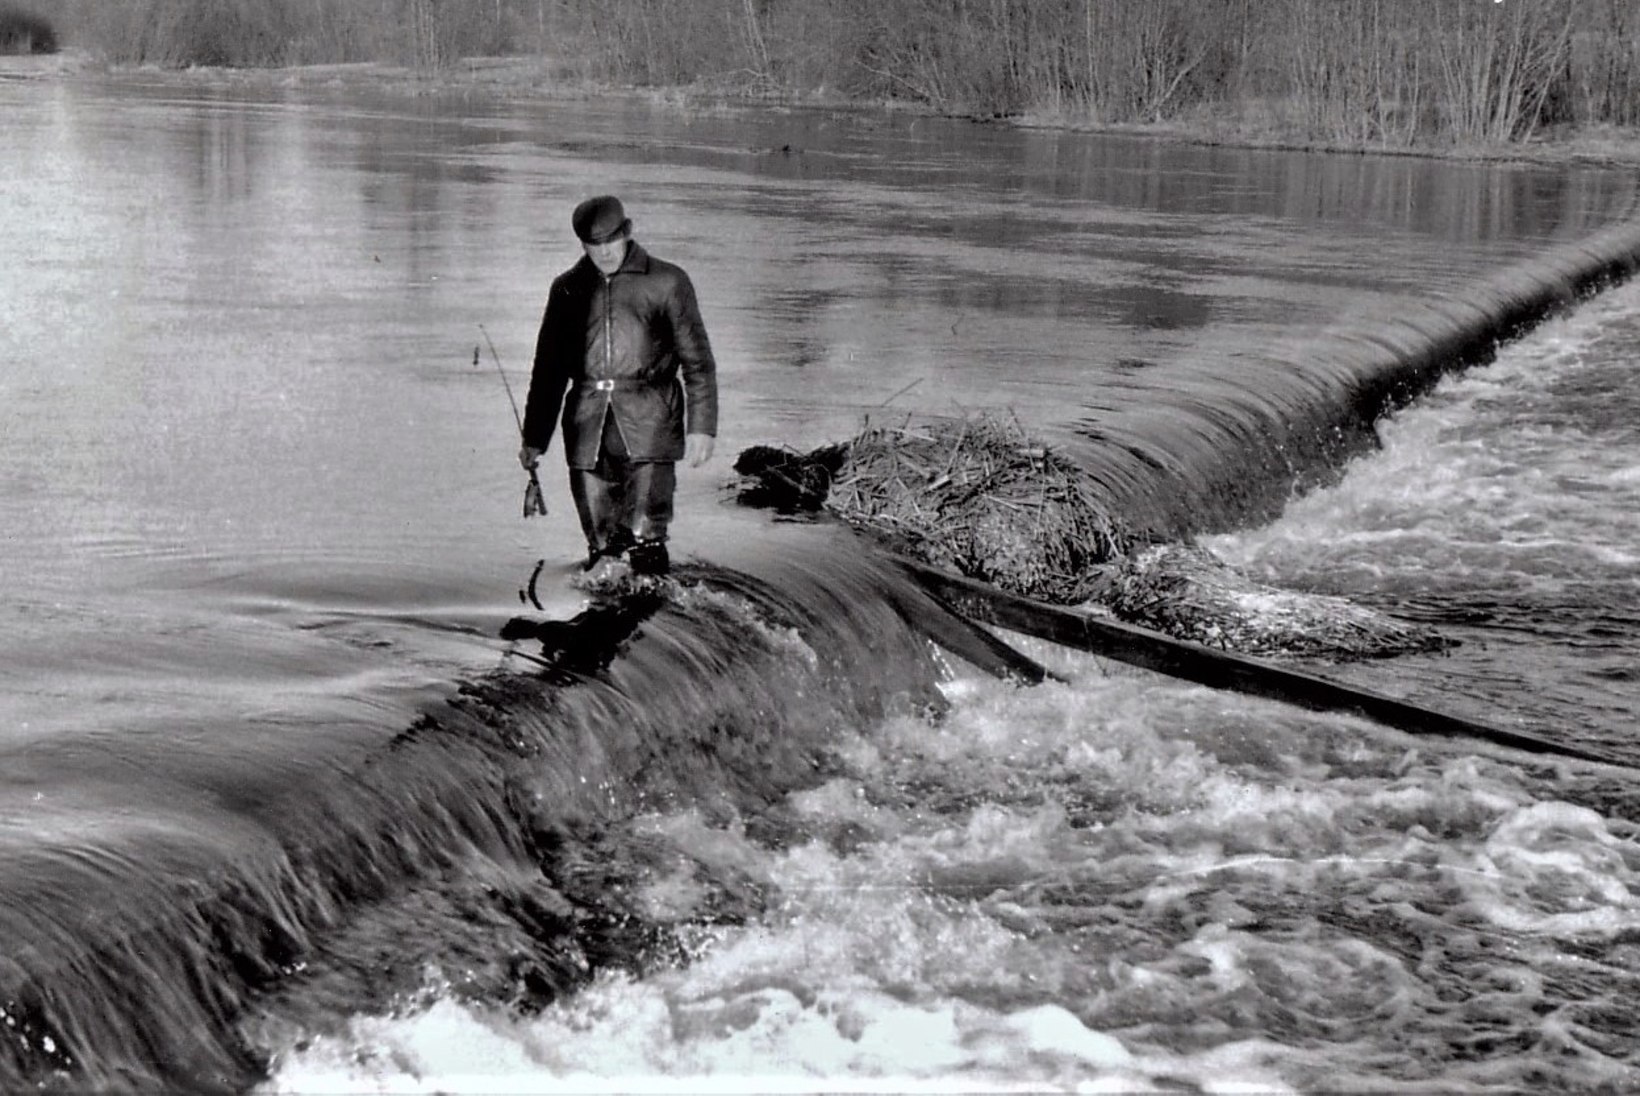 Veterankalamees Katenevi päevikud: 1977. aastal Viljandi järve vägevad kohad ja kuuekilone haug